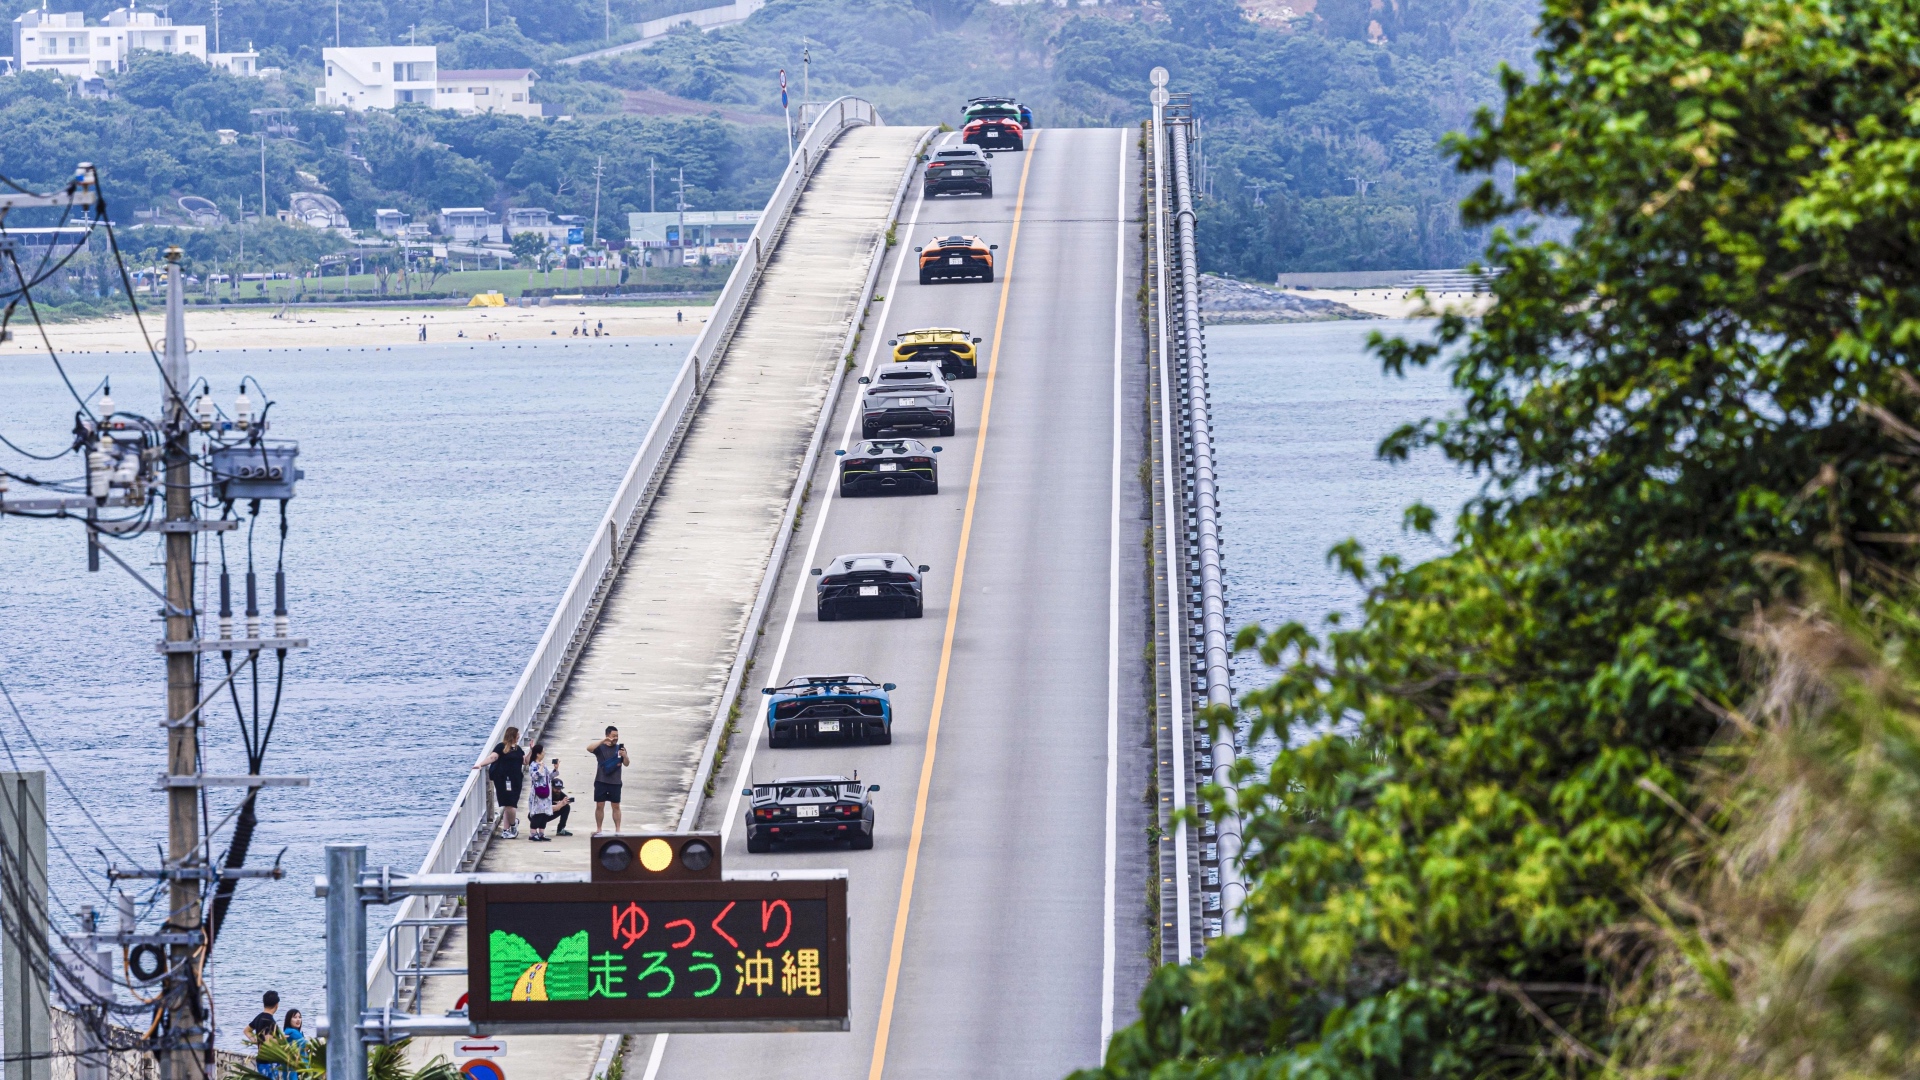 V8, V10 e V12 risuonano nella meravigliosa Okinawa